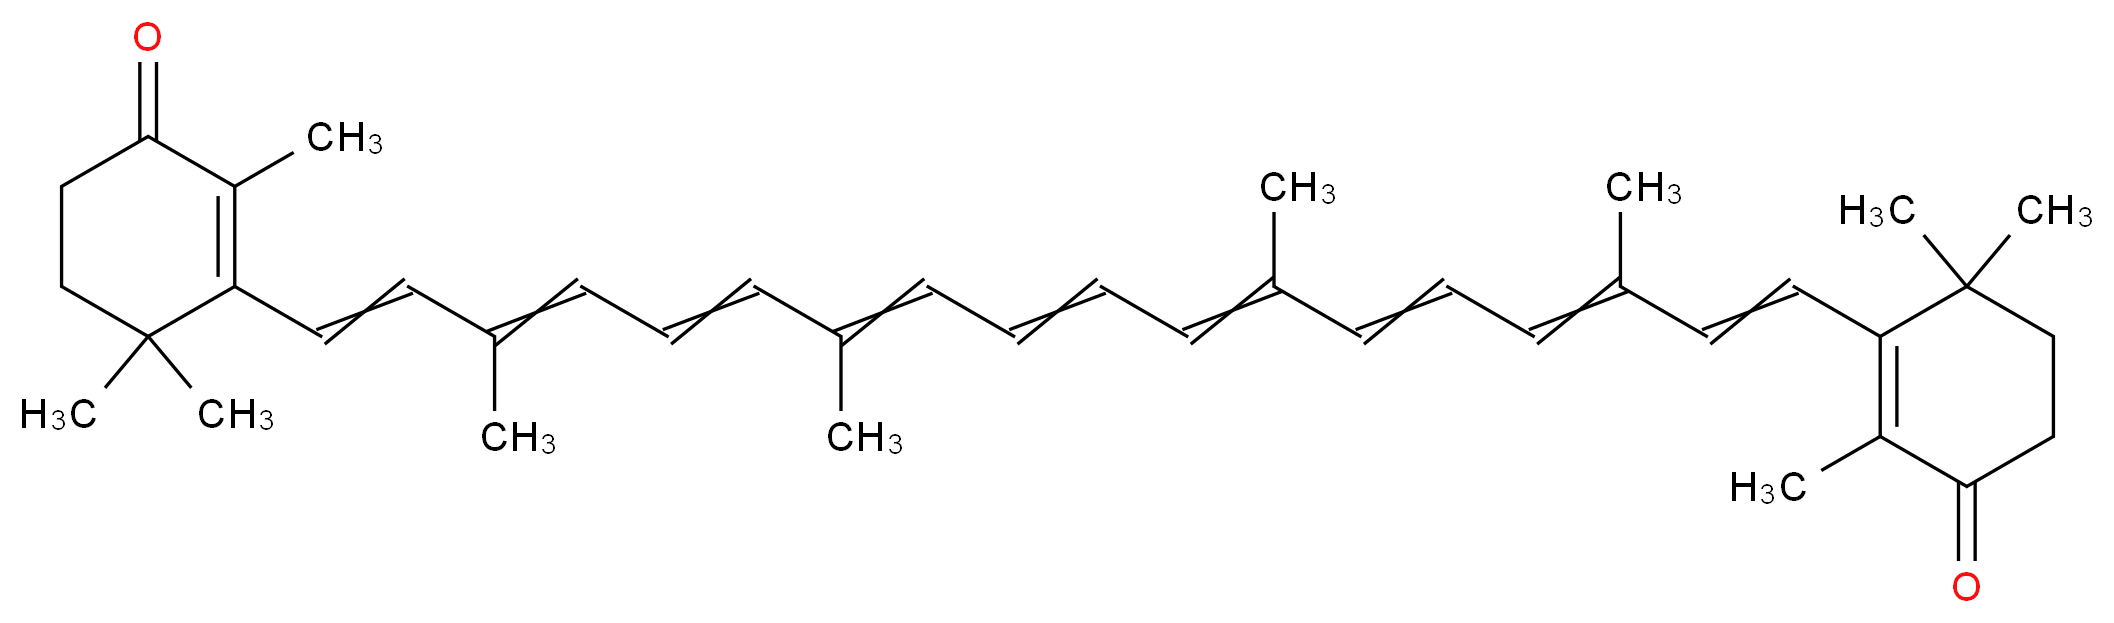 2,4,4-trimethyl-3-[(1E,3E,5E,7E,9E,11E,13E,15E,17E)-3,7,12,16-tetramethyl-18-(2,6,6-trimethyl-3-oxocyclohex-1-en-1-yl)octadeca-1,3,5,7,9,11,13,15,17-nonaen-1-yl]cyclohex-2-en-1-one_分子结构_CAS_514-78-3